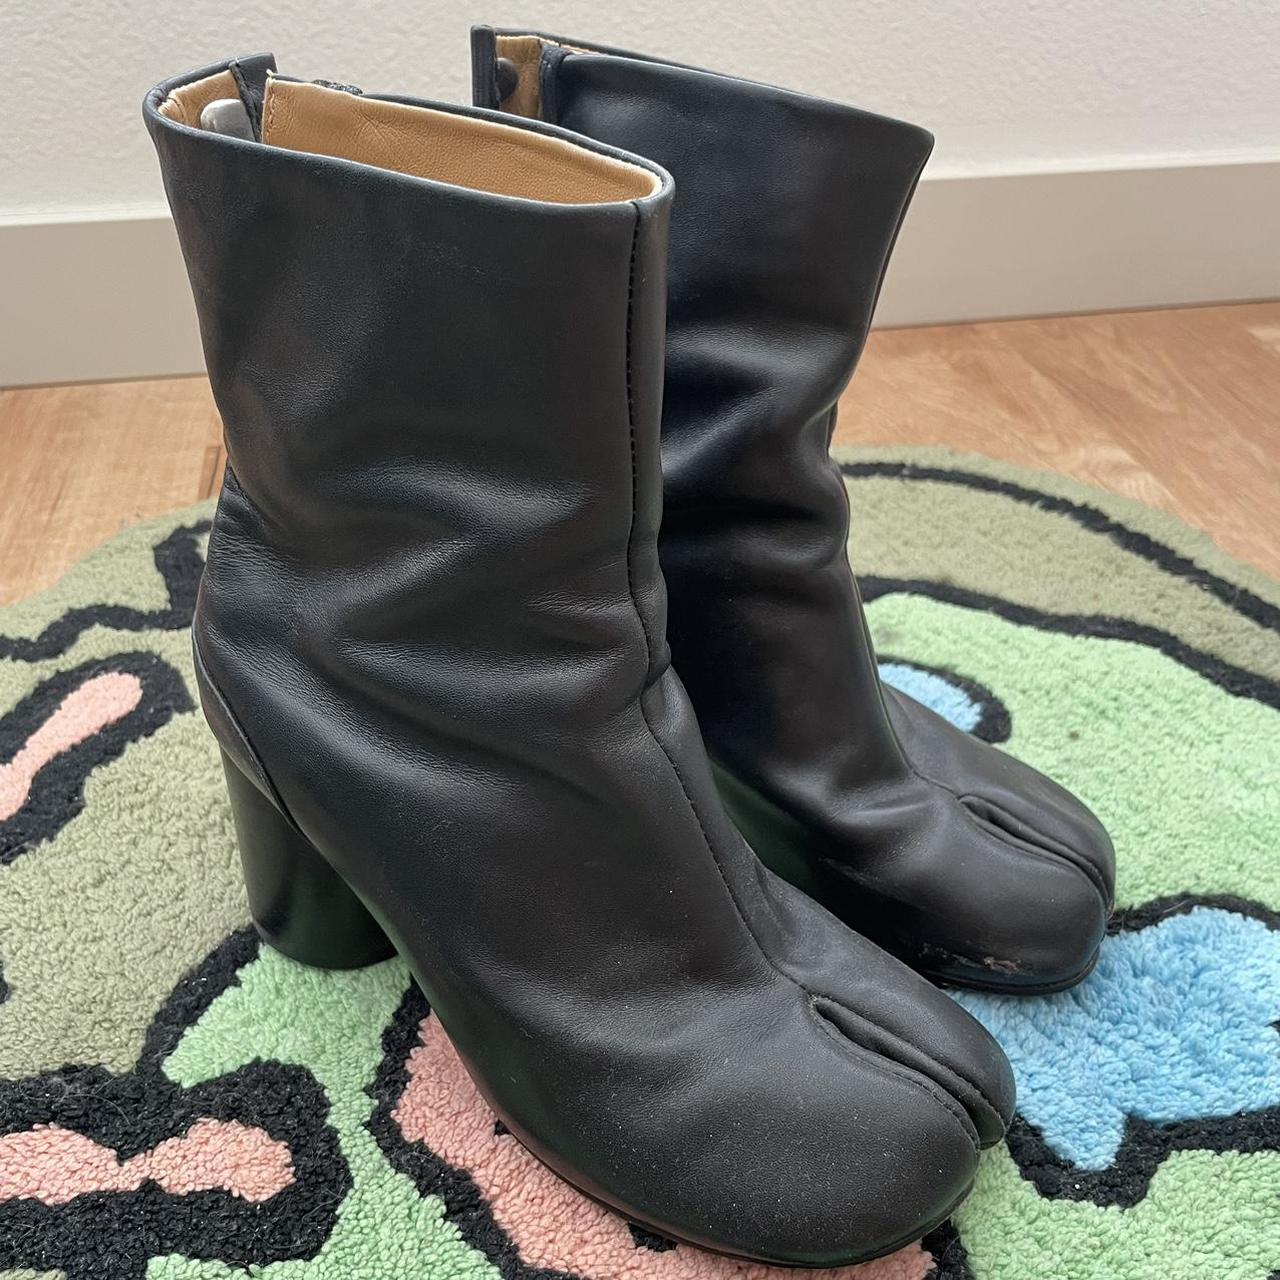 maison margiela tabi boots in size 36 (women’s... - Depop